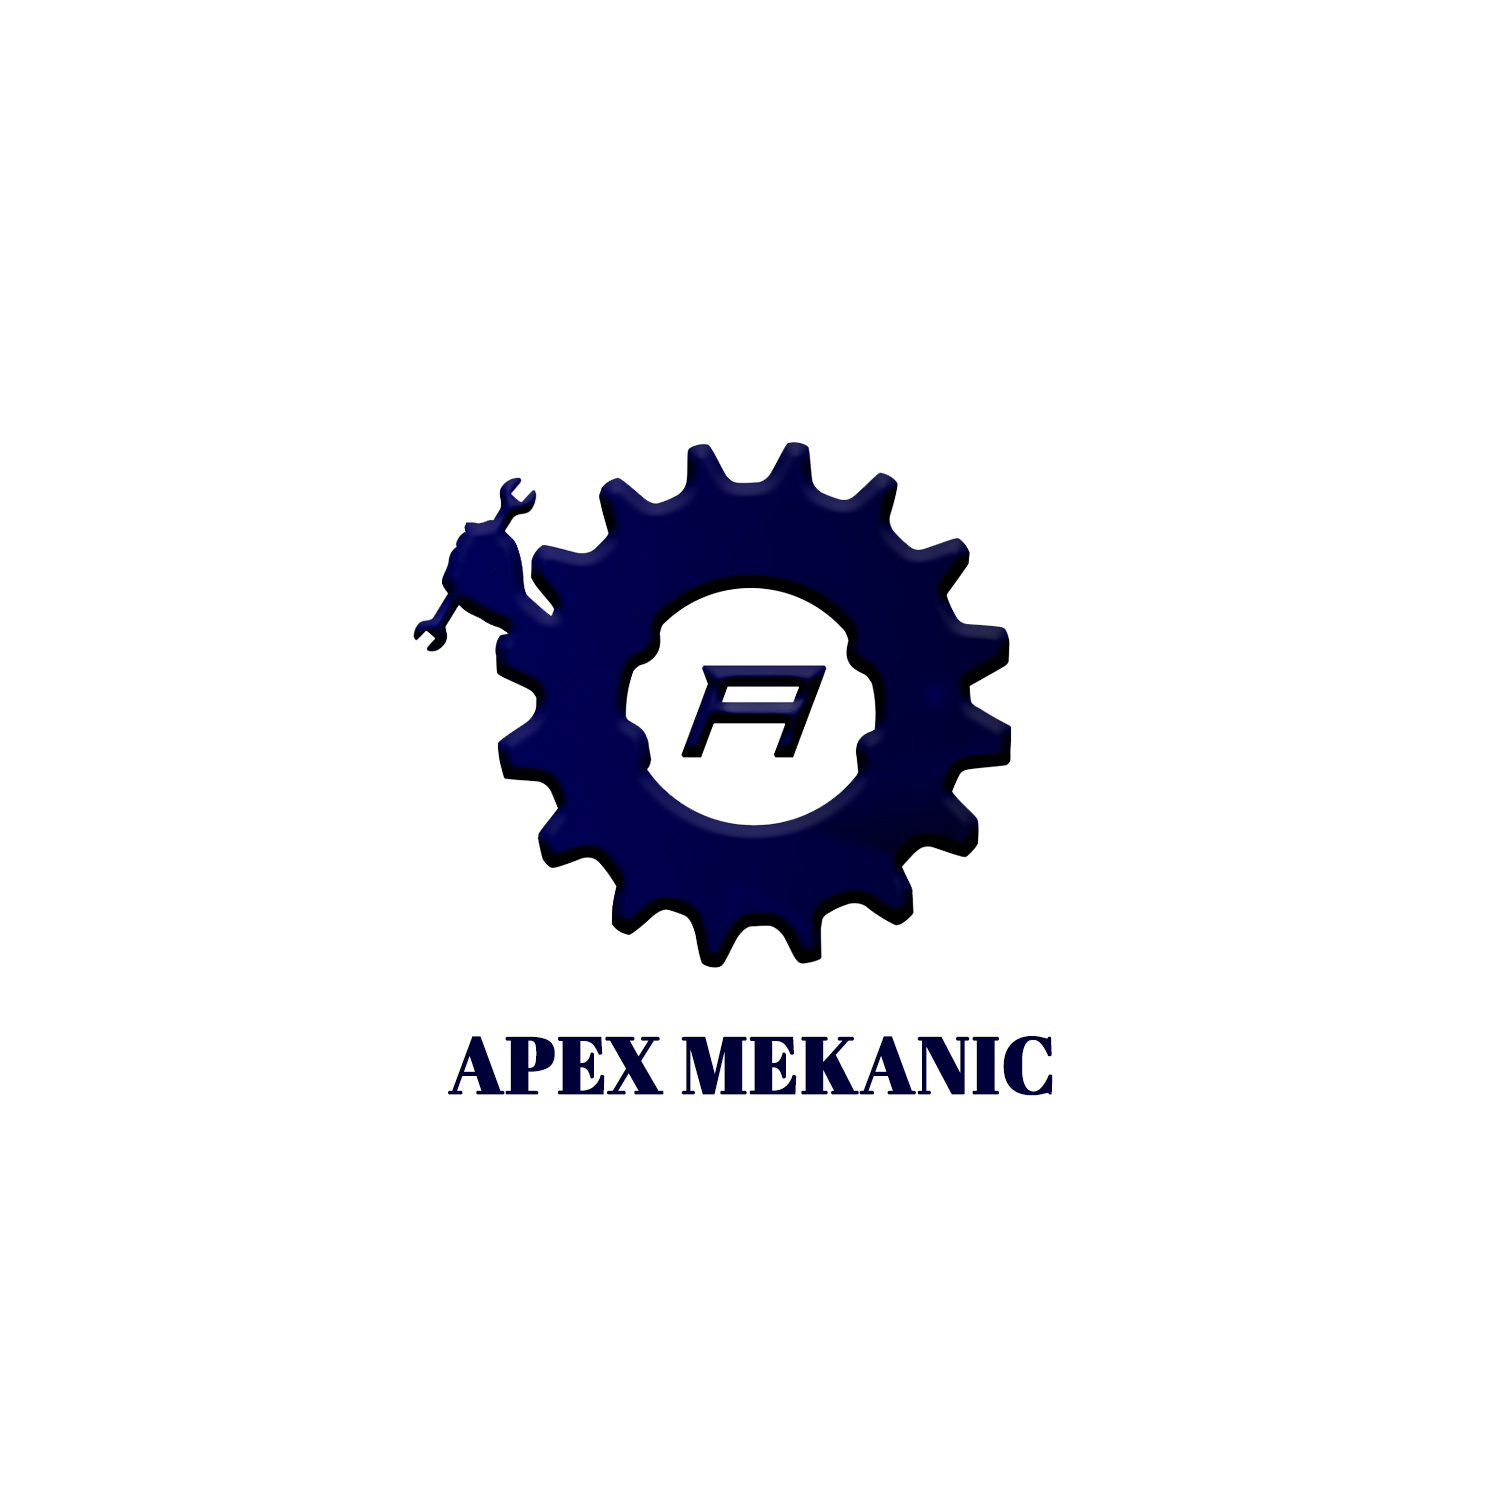 Apex Mekanic provider